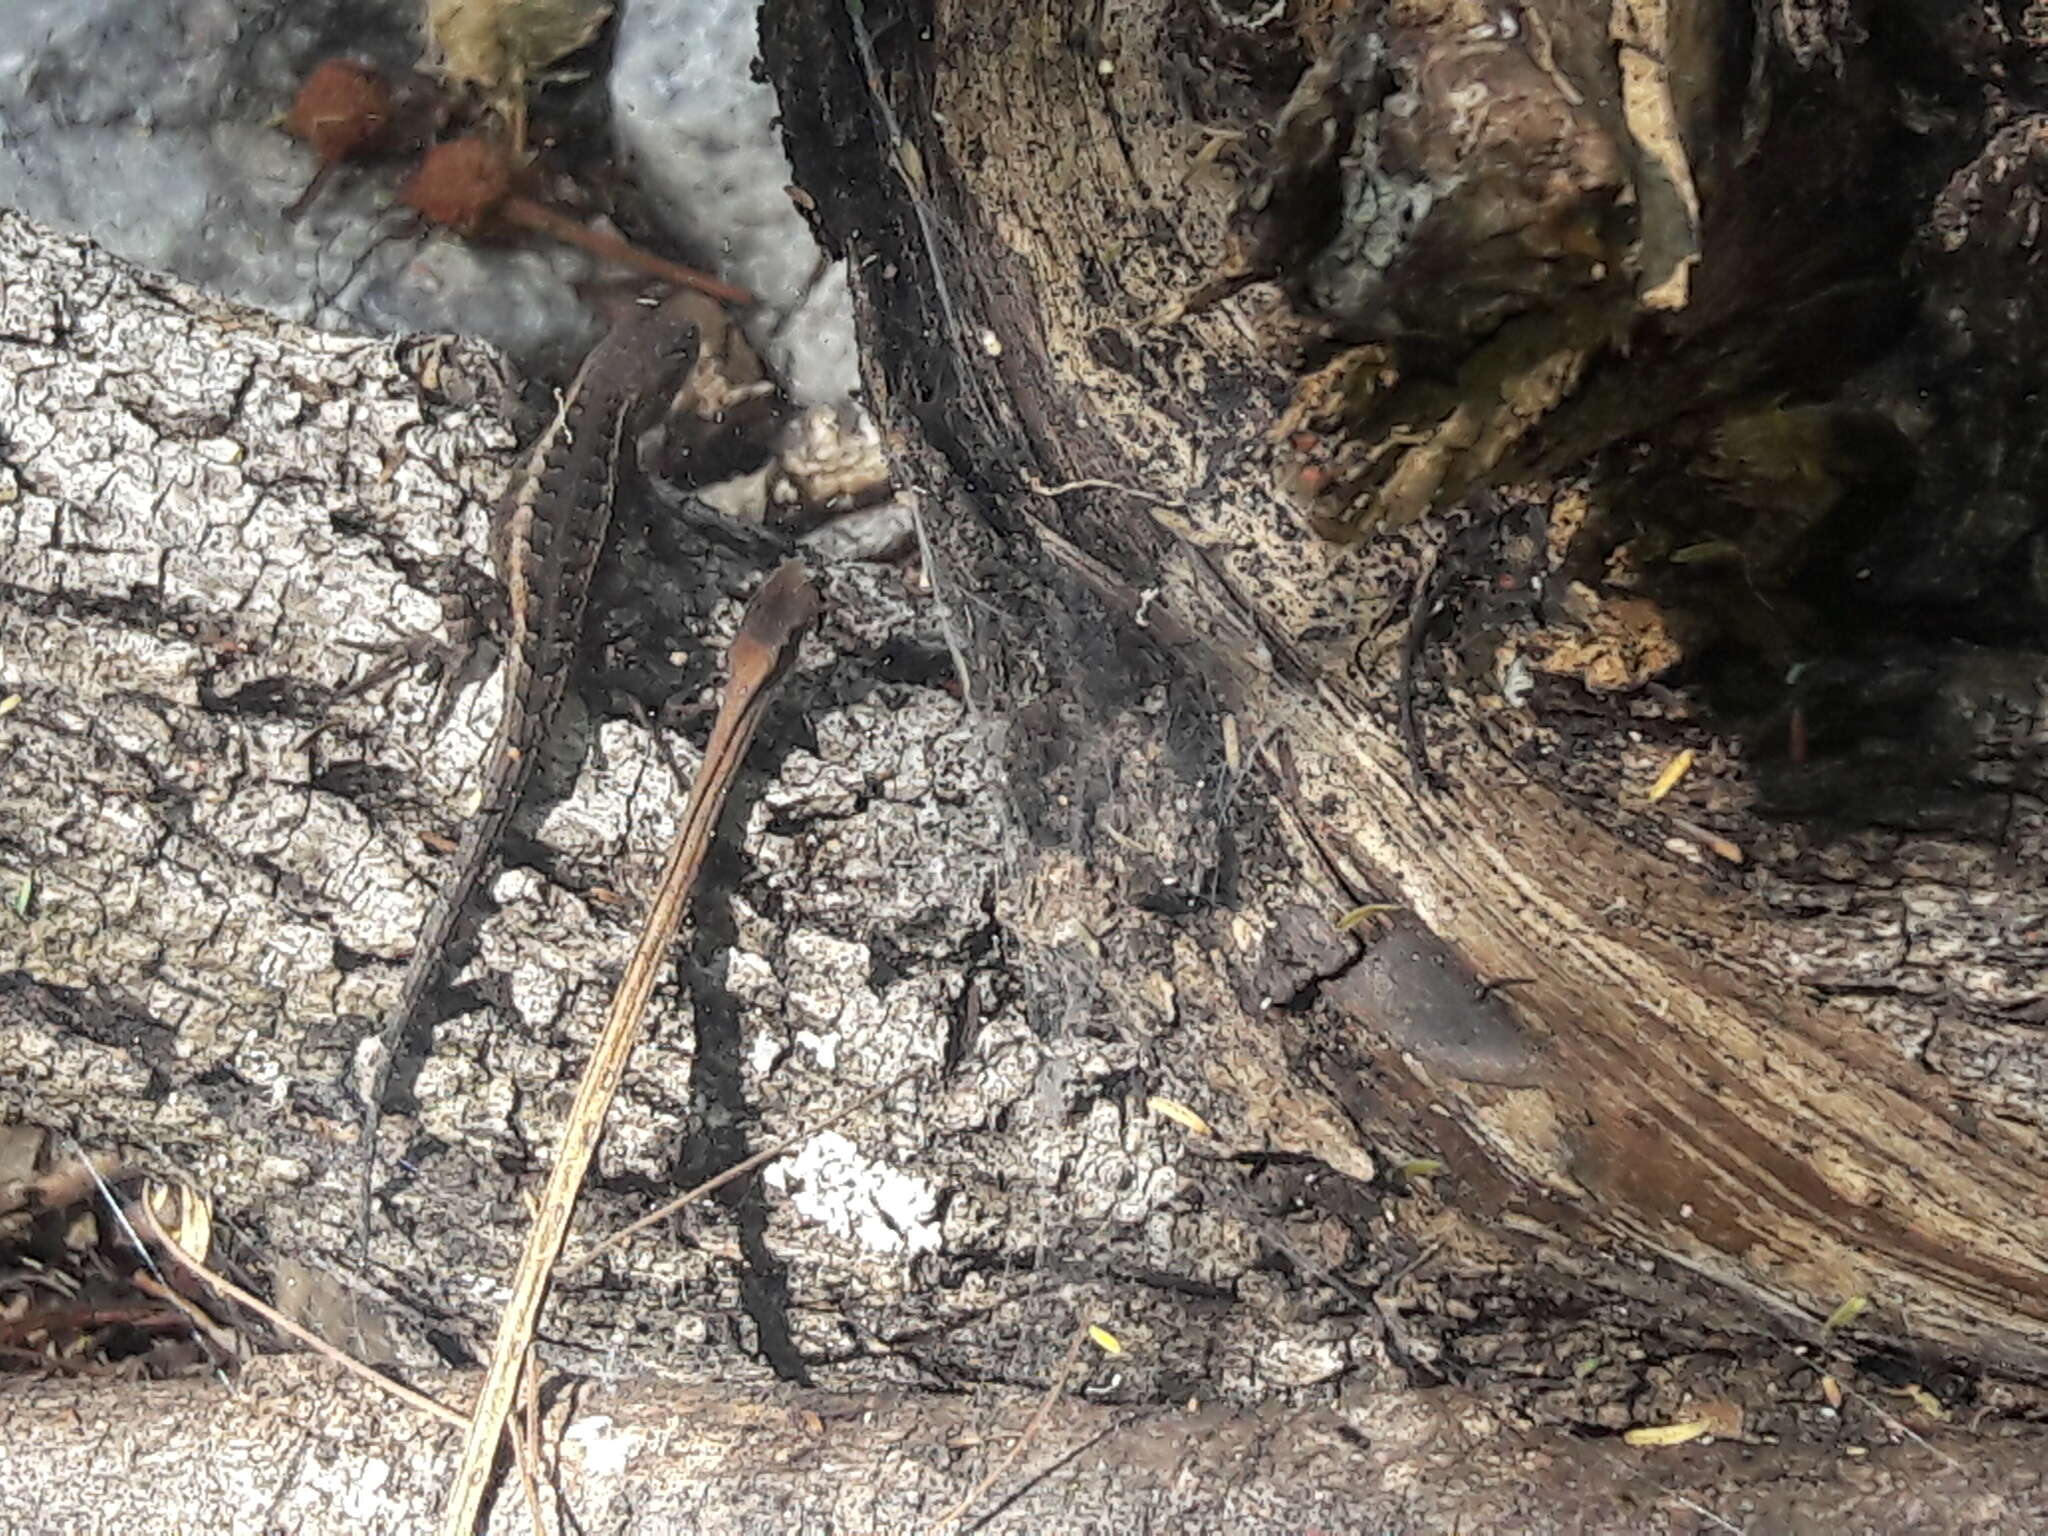 Image of Ochoterena's Lizard